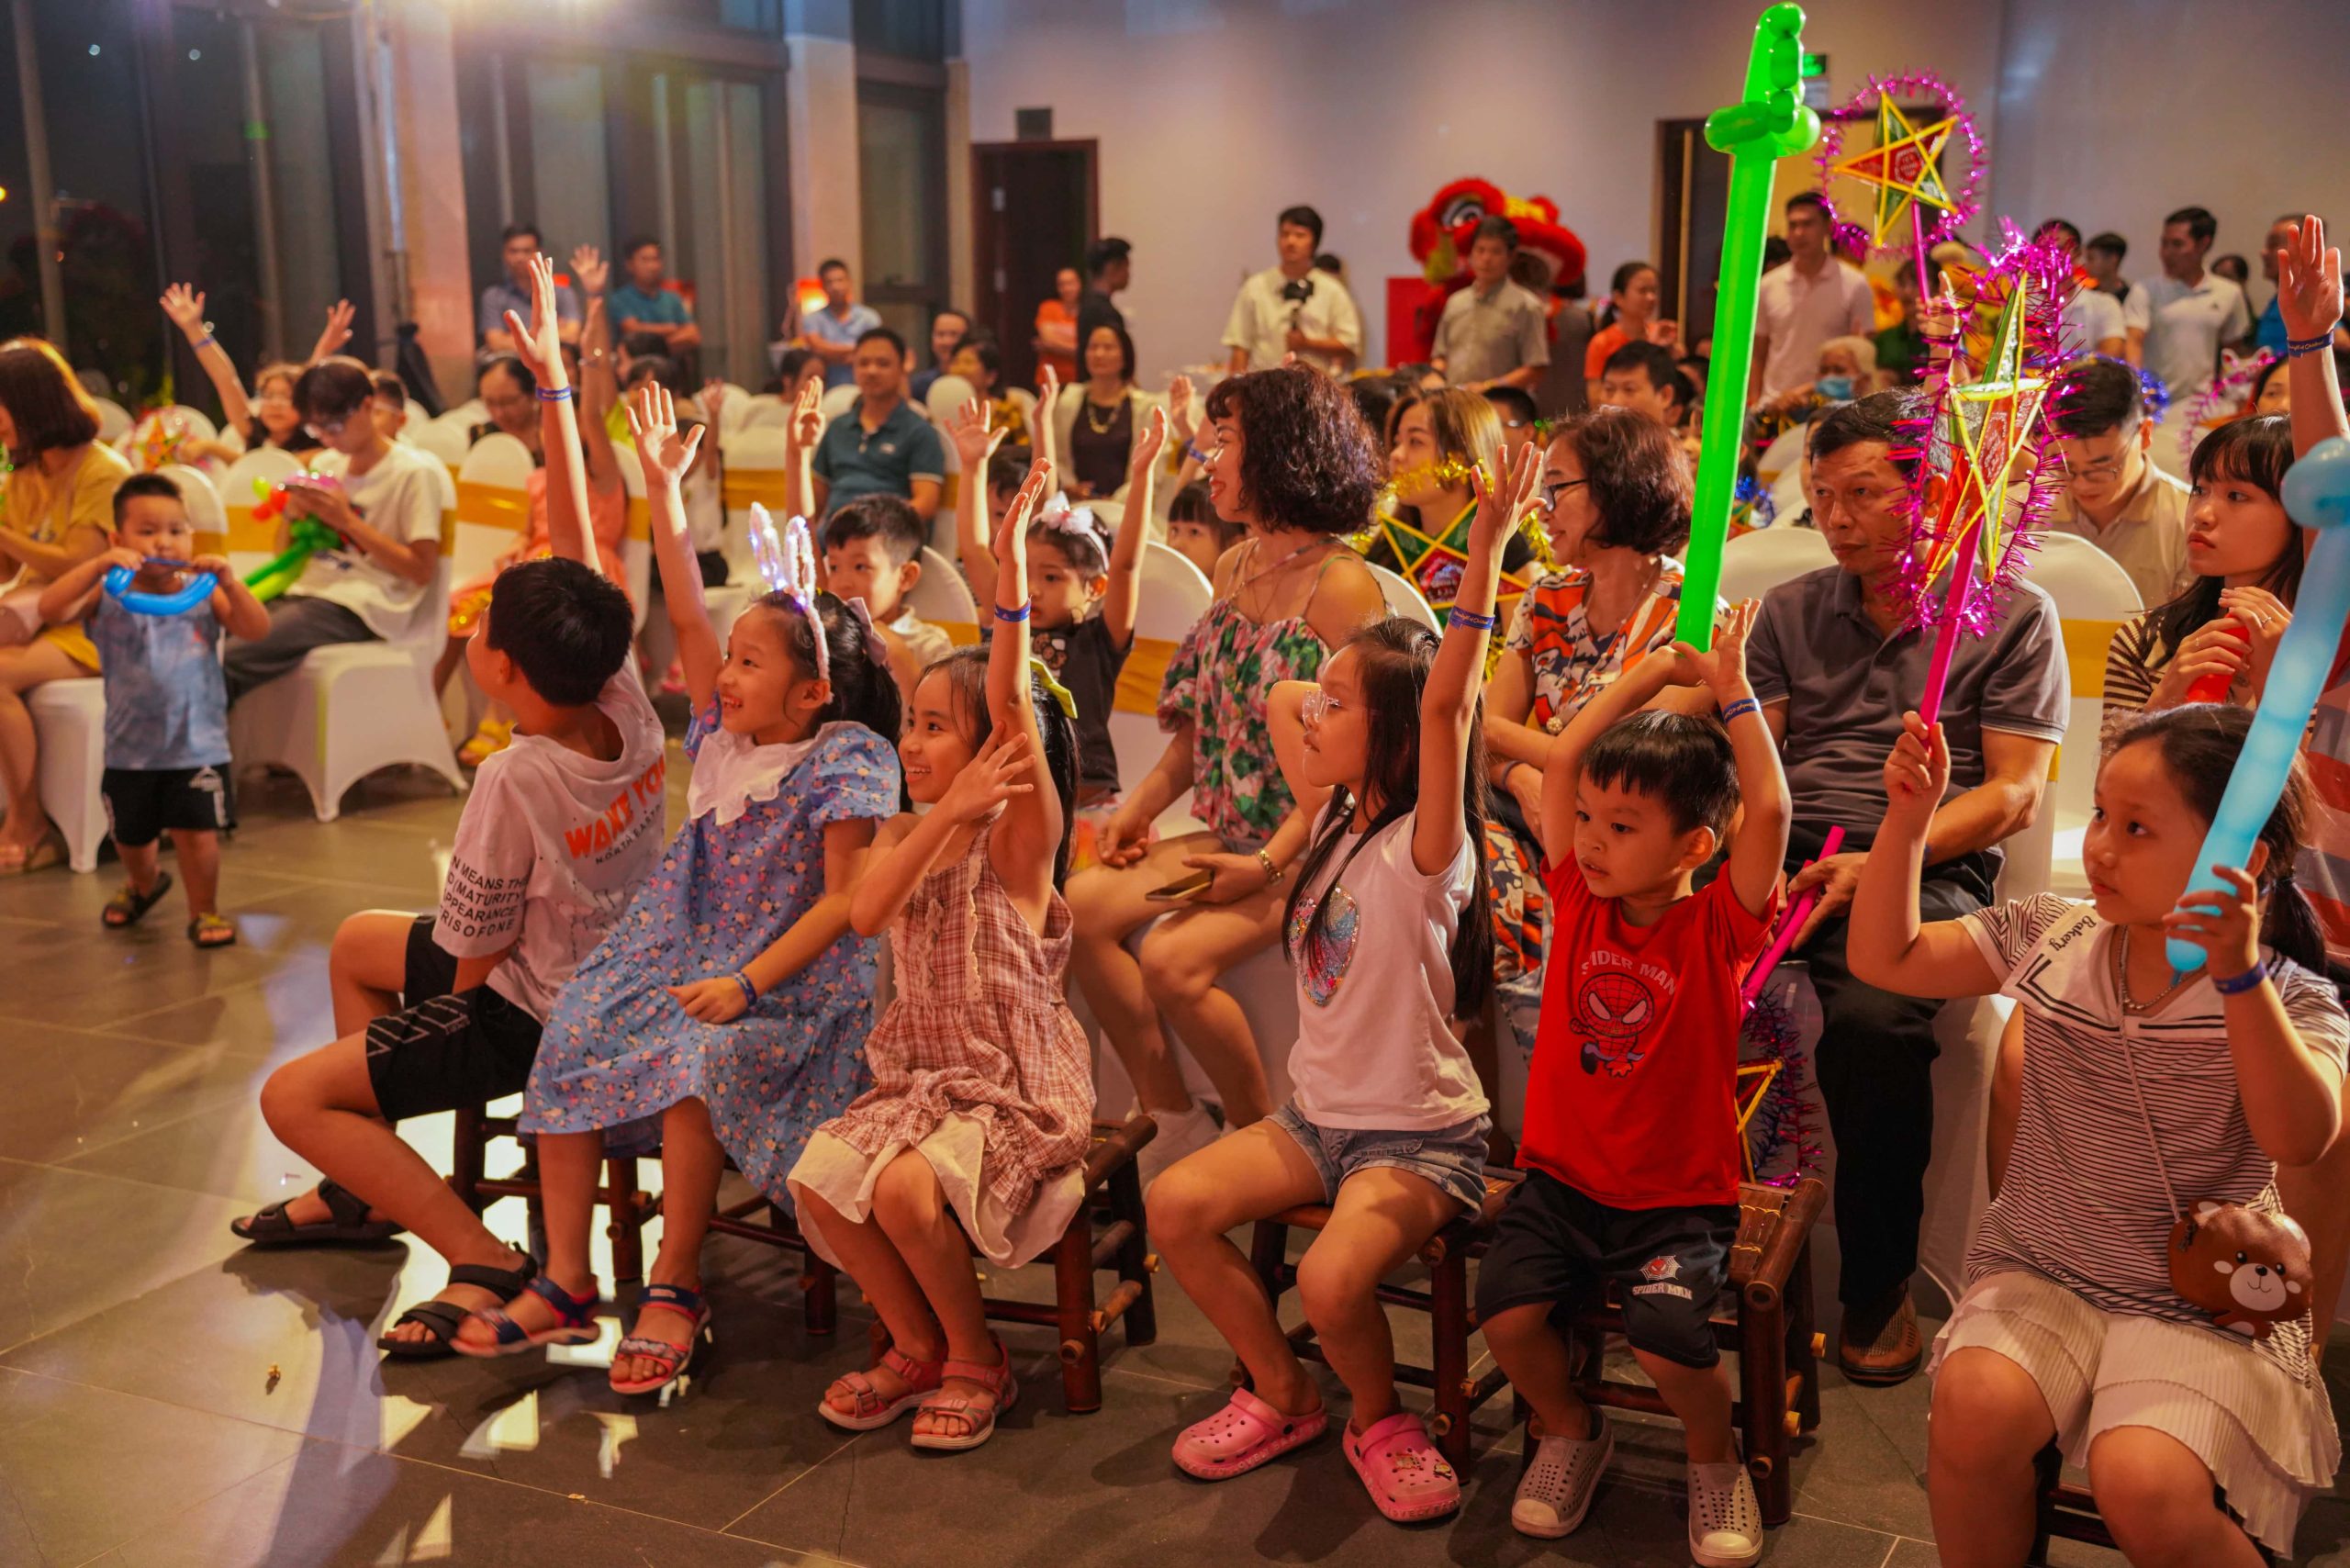 Tập đoàn An Lạc tổ chức chương trình “Ánh trăng tuổi thơ” tại KĐT Anlac Green Symphony